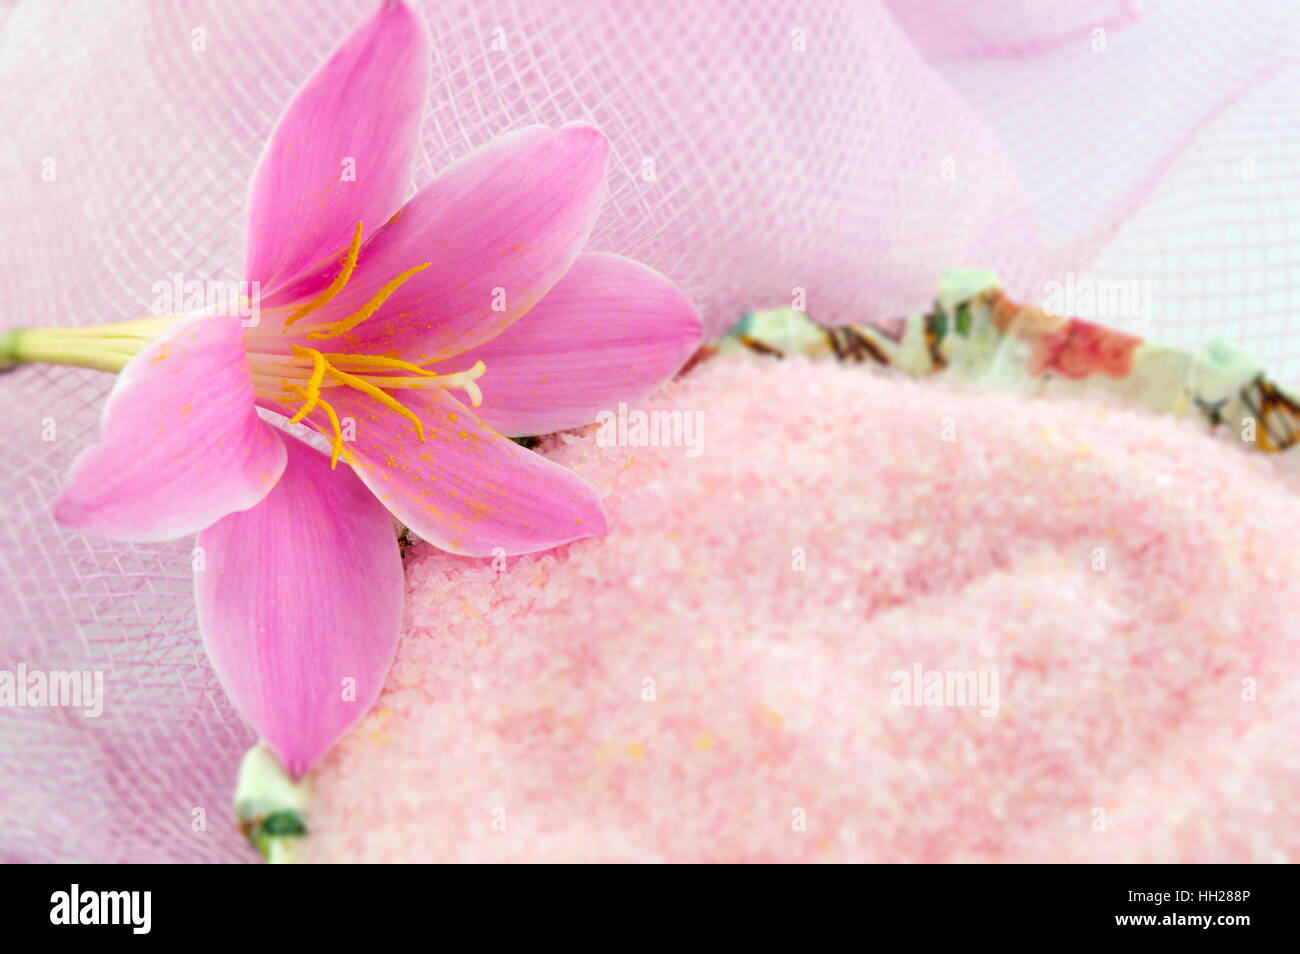 Rosa Lilie Blume mit rosa Badesalz in einer Schüssel Serviettentechnik dekoriert auf rosa strukturierten Hintergrund Stockfoto